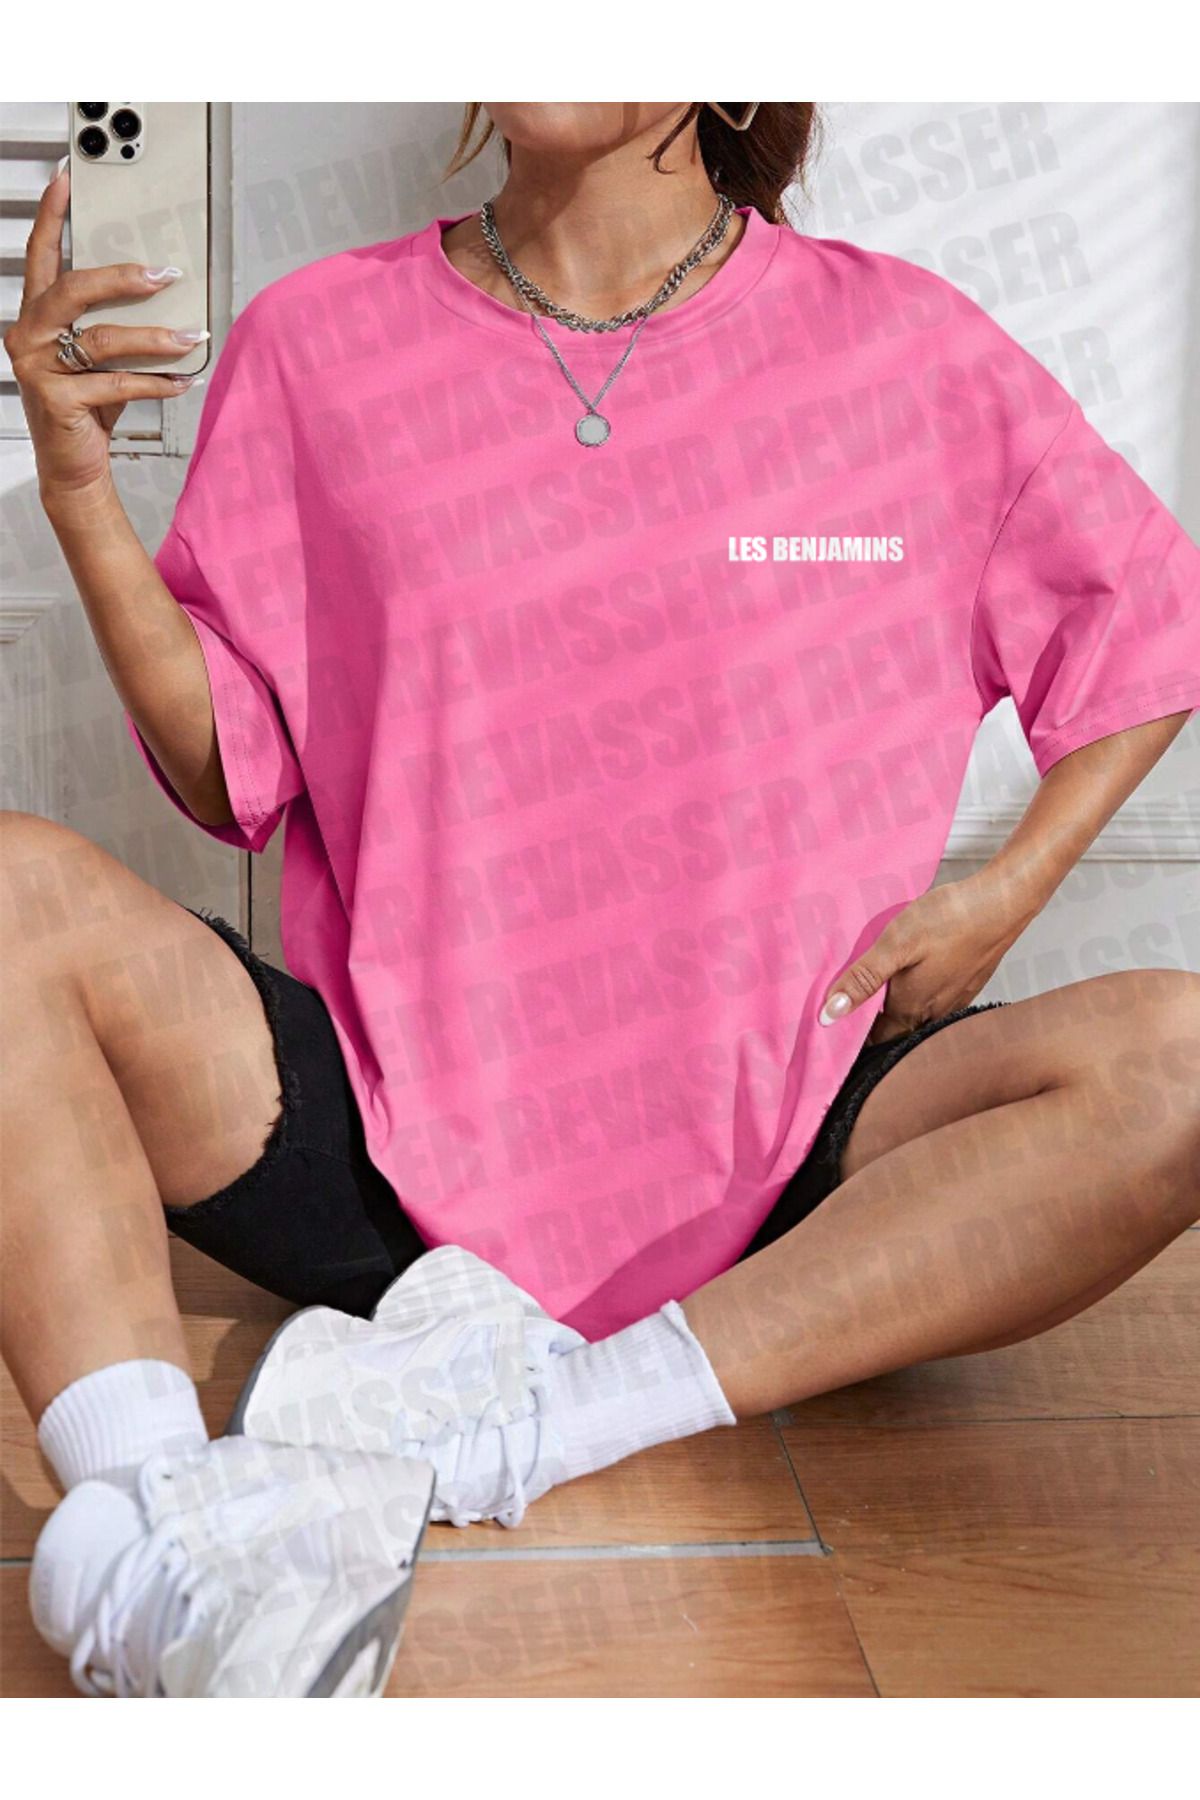 NİCE Unisex Kadın/Erkek LESBENJAMINS Renkli Özel Baskılı Oversize Pamuk Penye T-Shirt